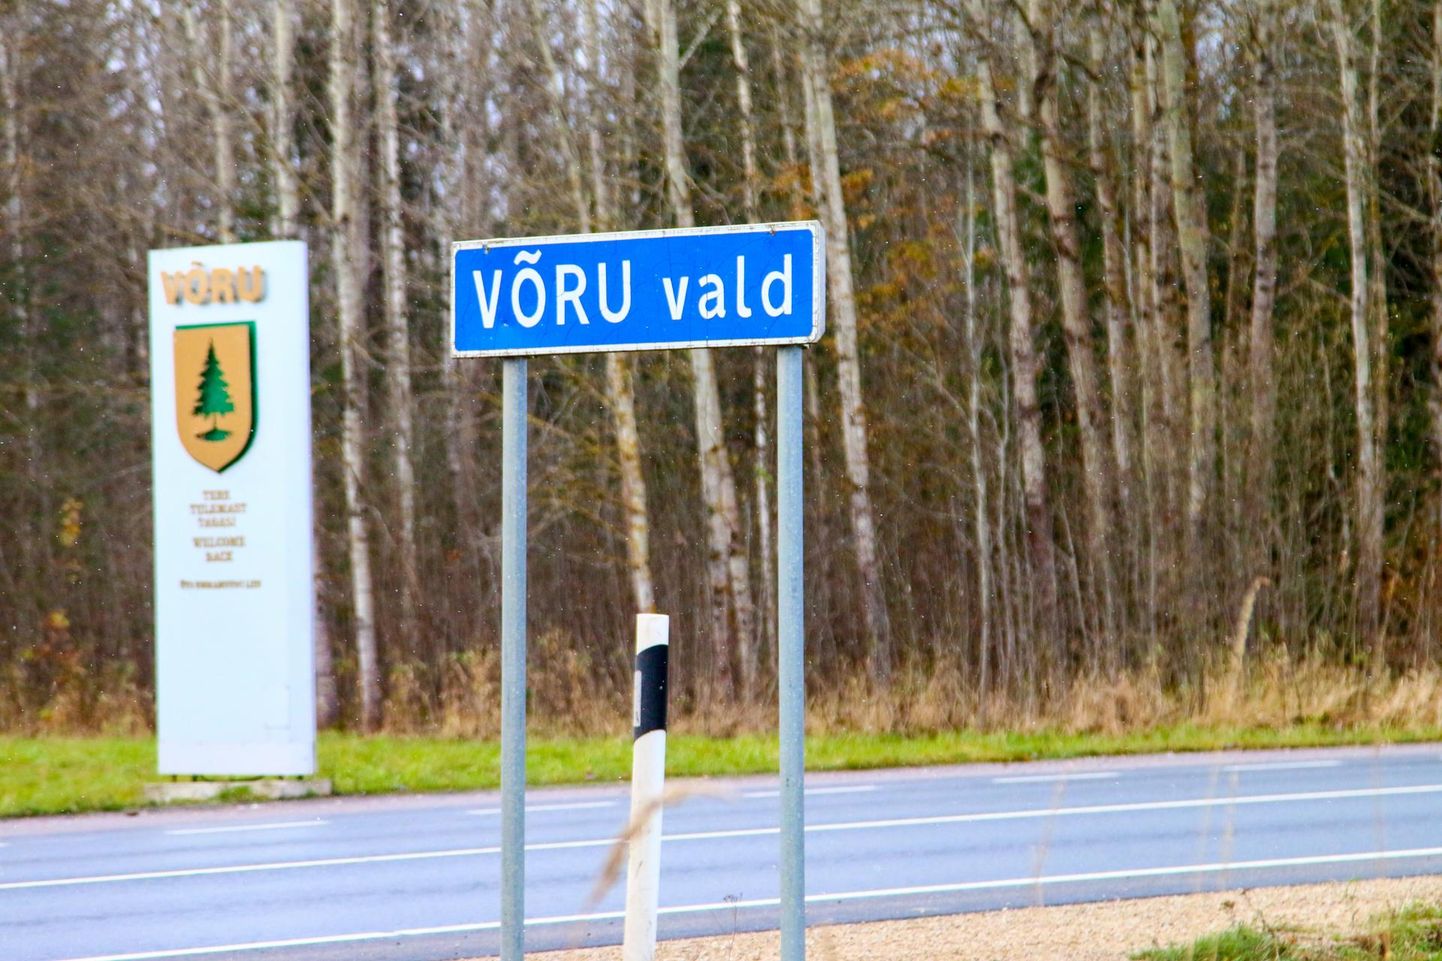 Uuring näitab, et Lõuna-Eesti omavalitsuste võrdluses on kodukandi eluoluga kõige rohkem rahul Võru linna ja valla elanikud. Foto on illustreeriv.